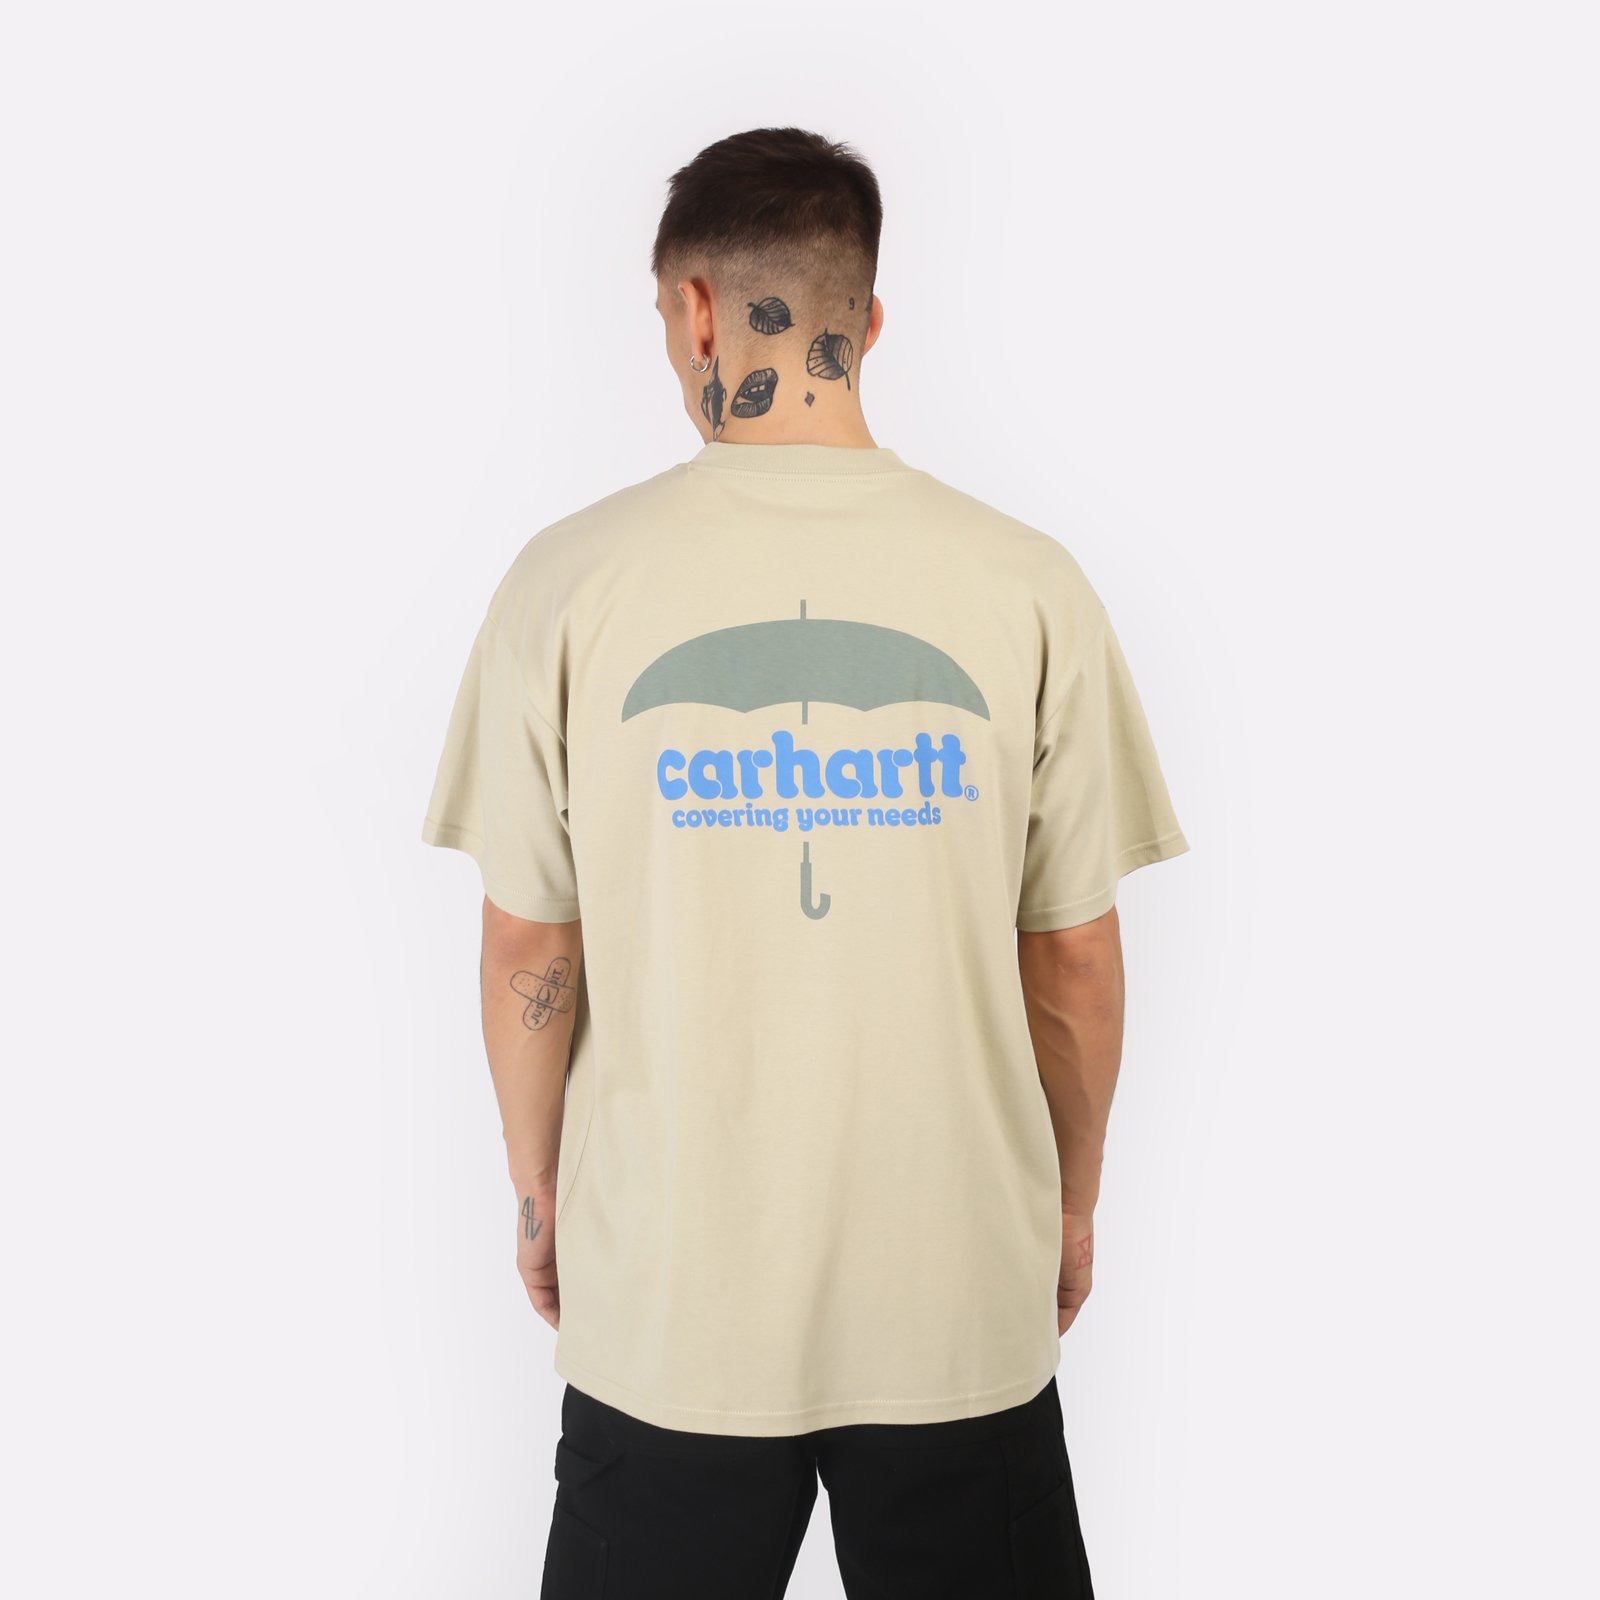 мужская футболка Carhartt WIP S/S Covers T-Shirt  (I033165-beryl)  - цена, описание, фото 2